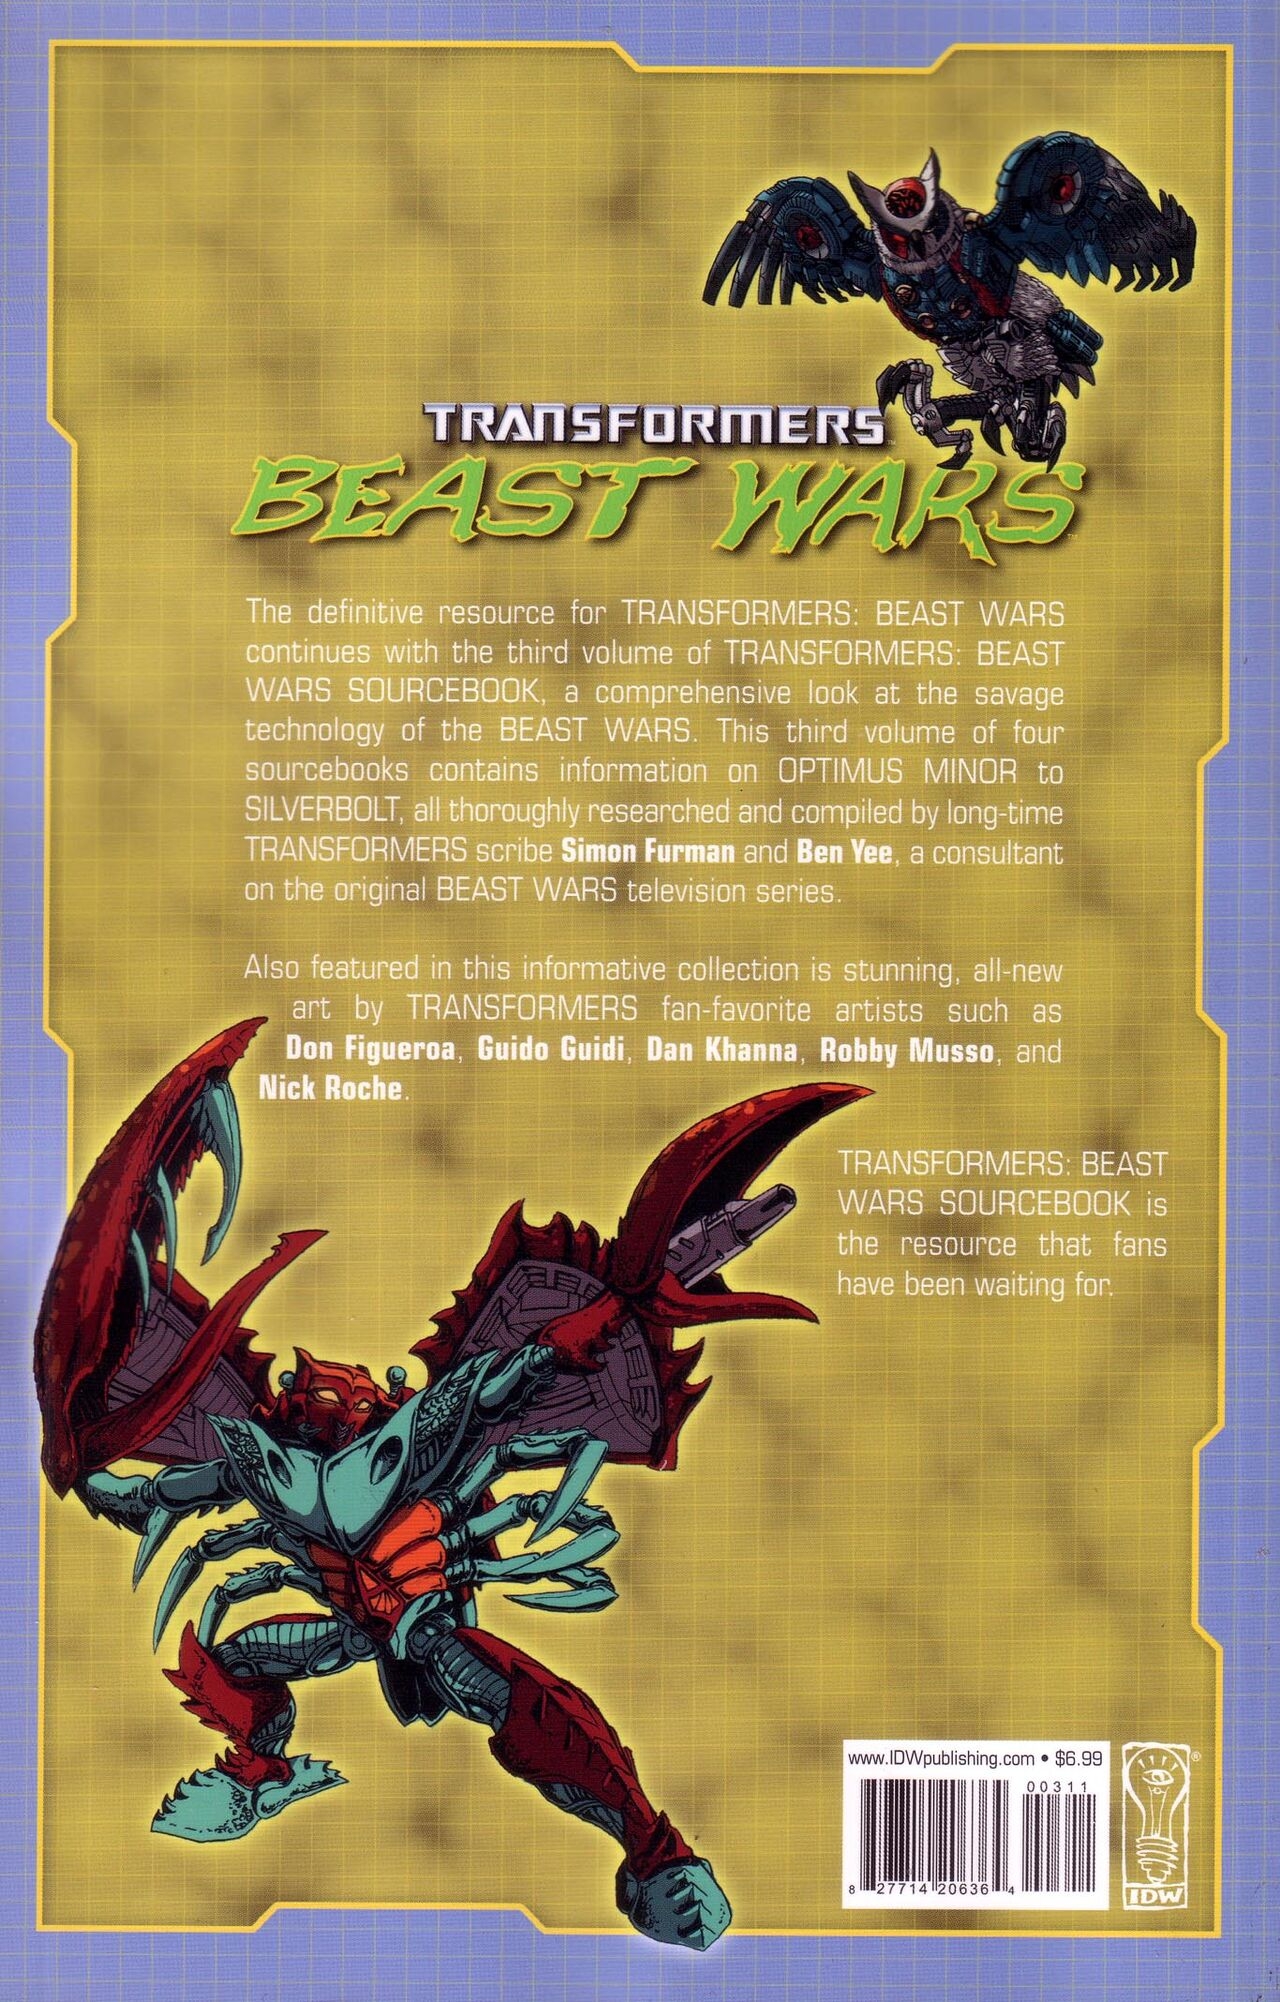 Transformers: Beast Wars Sourcebook #1-4 143